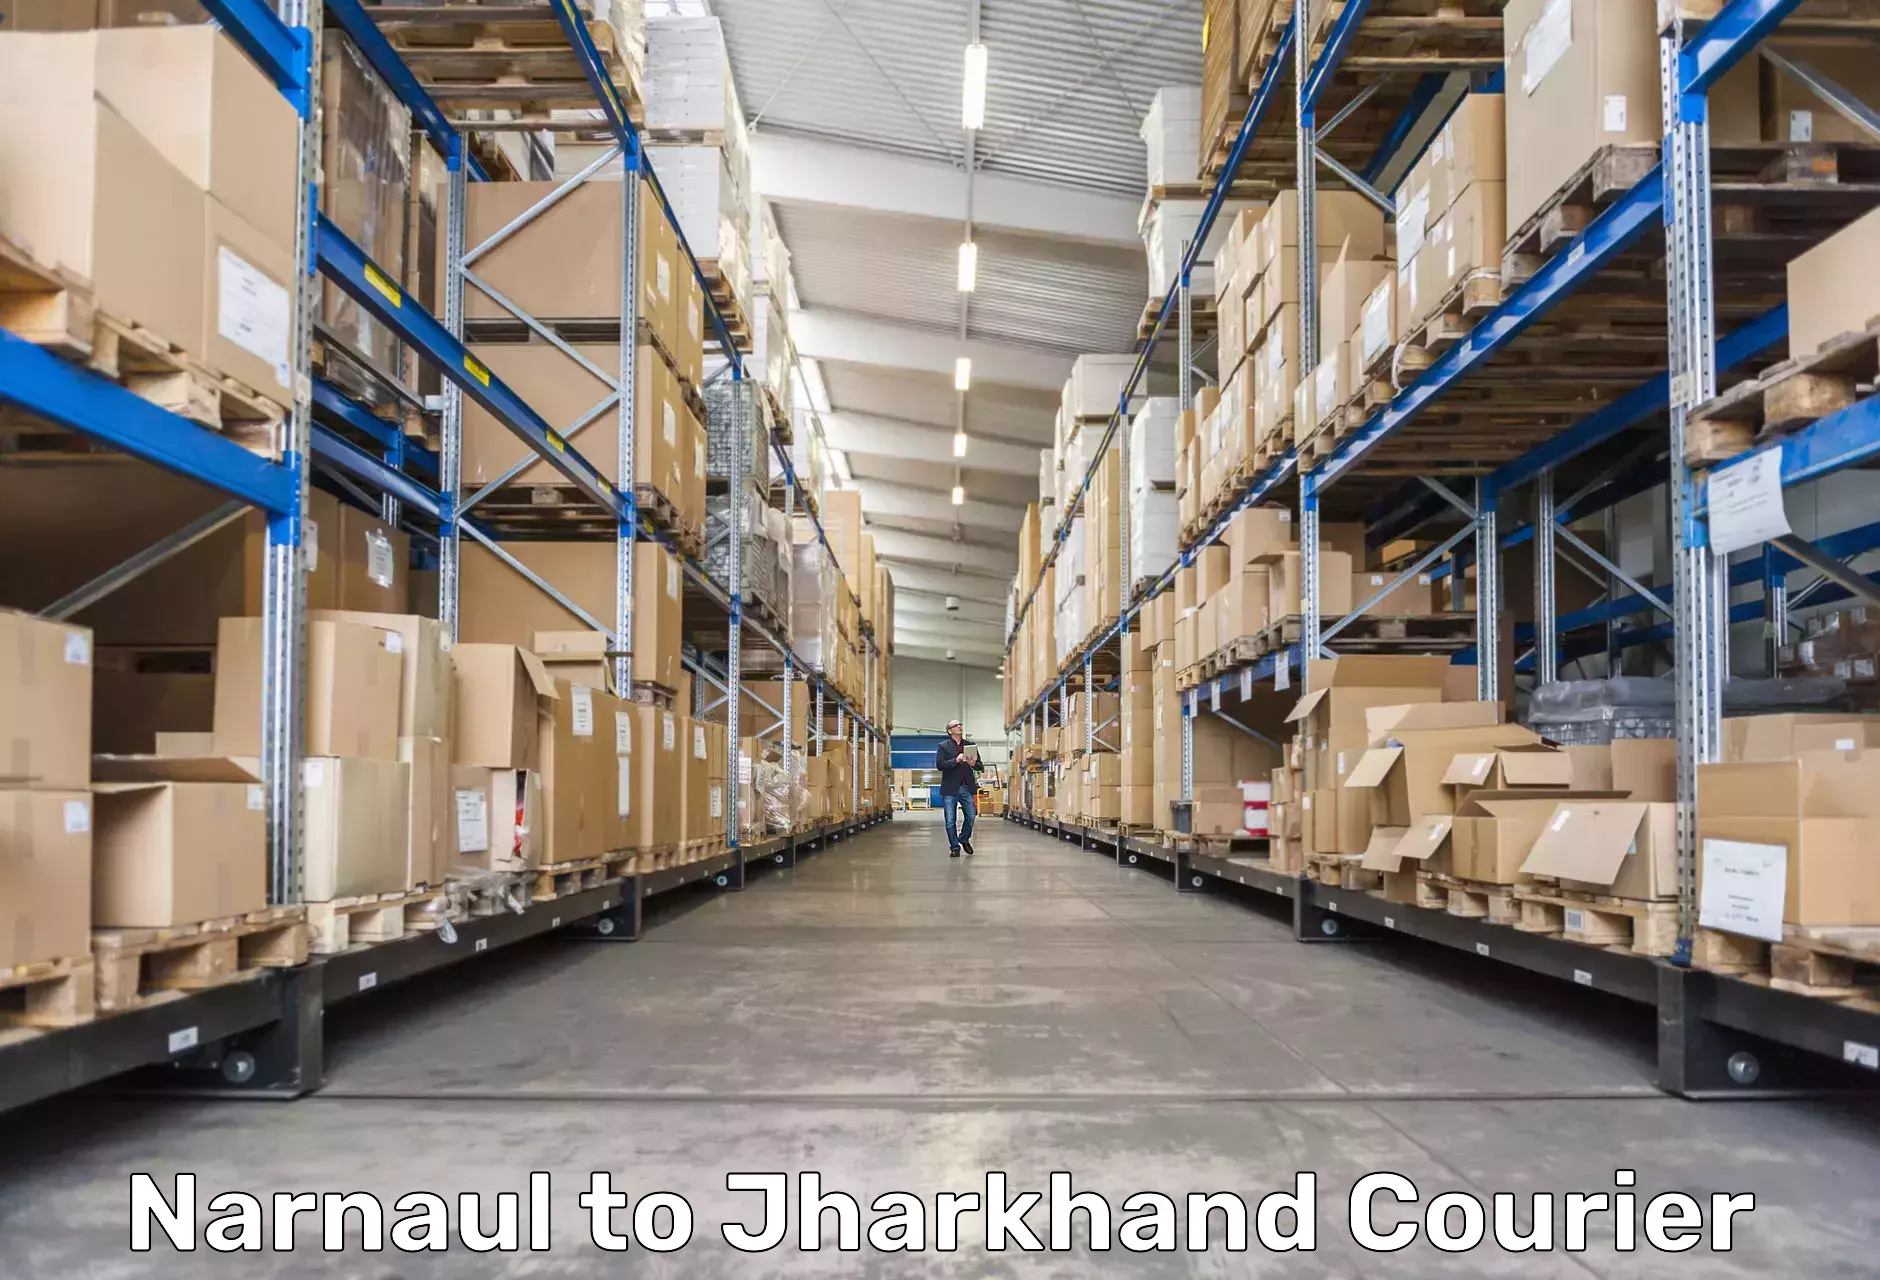 Professional courier handling Narnaul to Govindpur